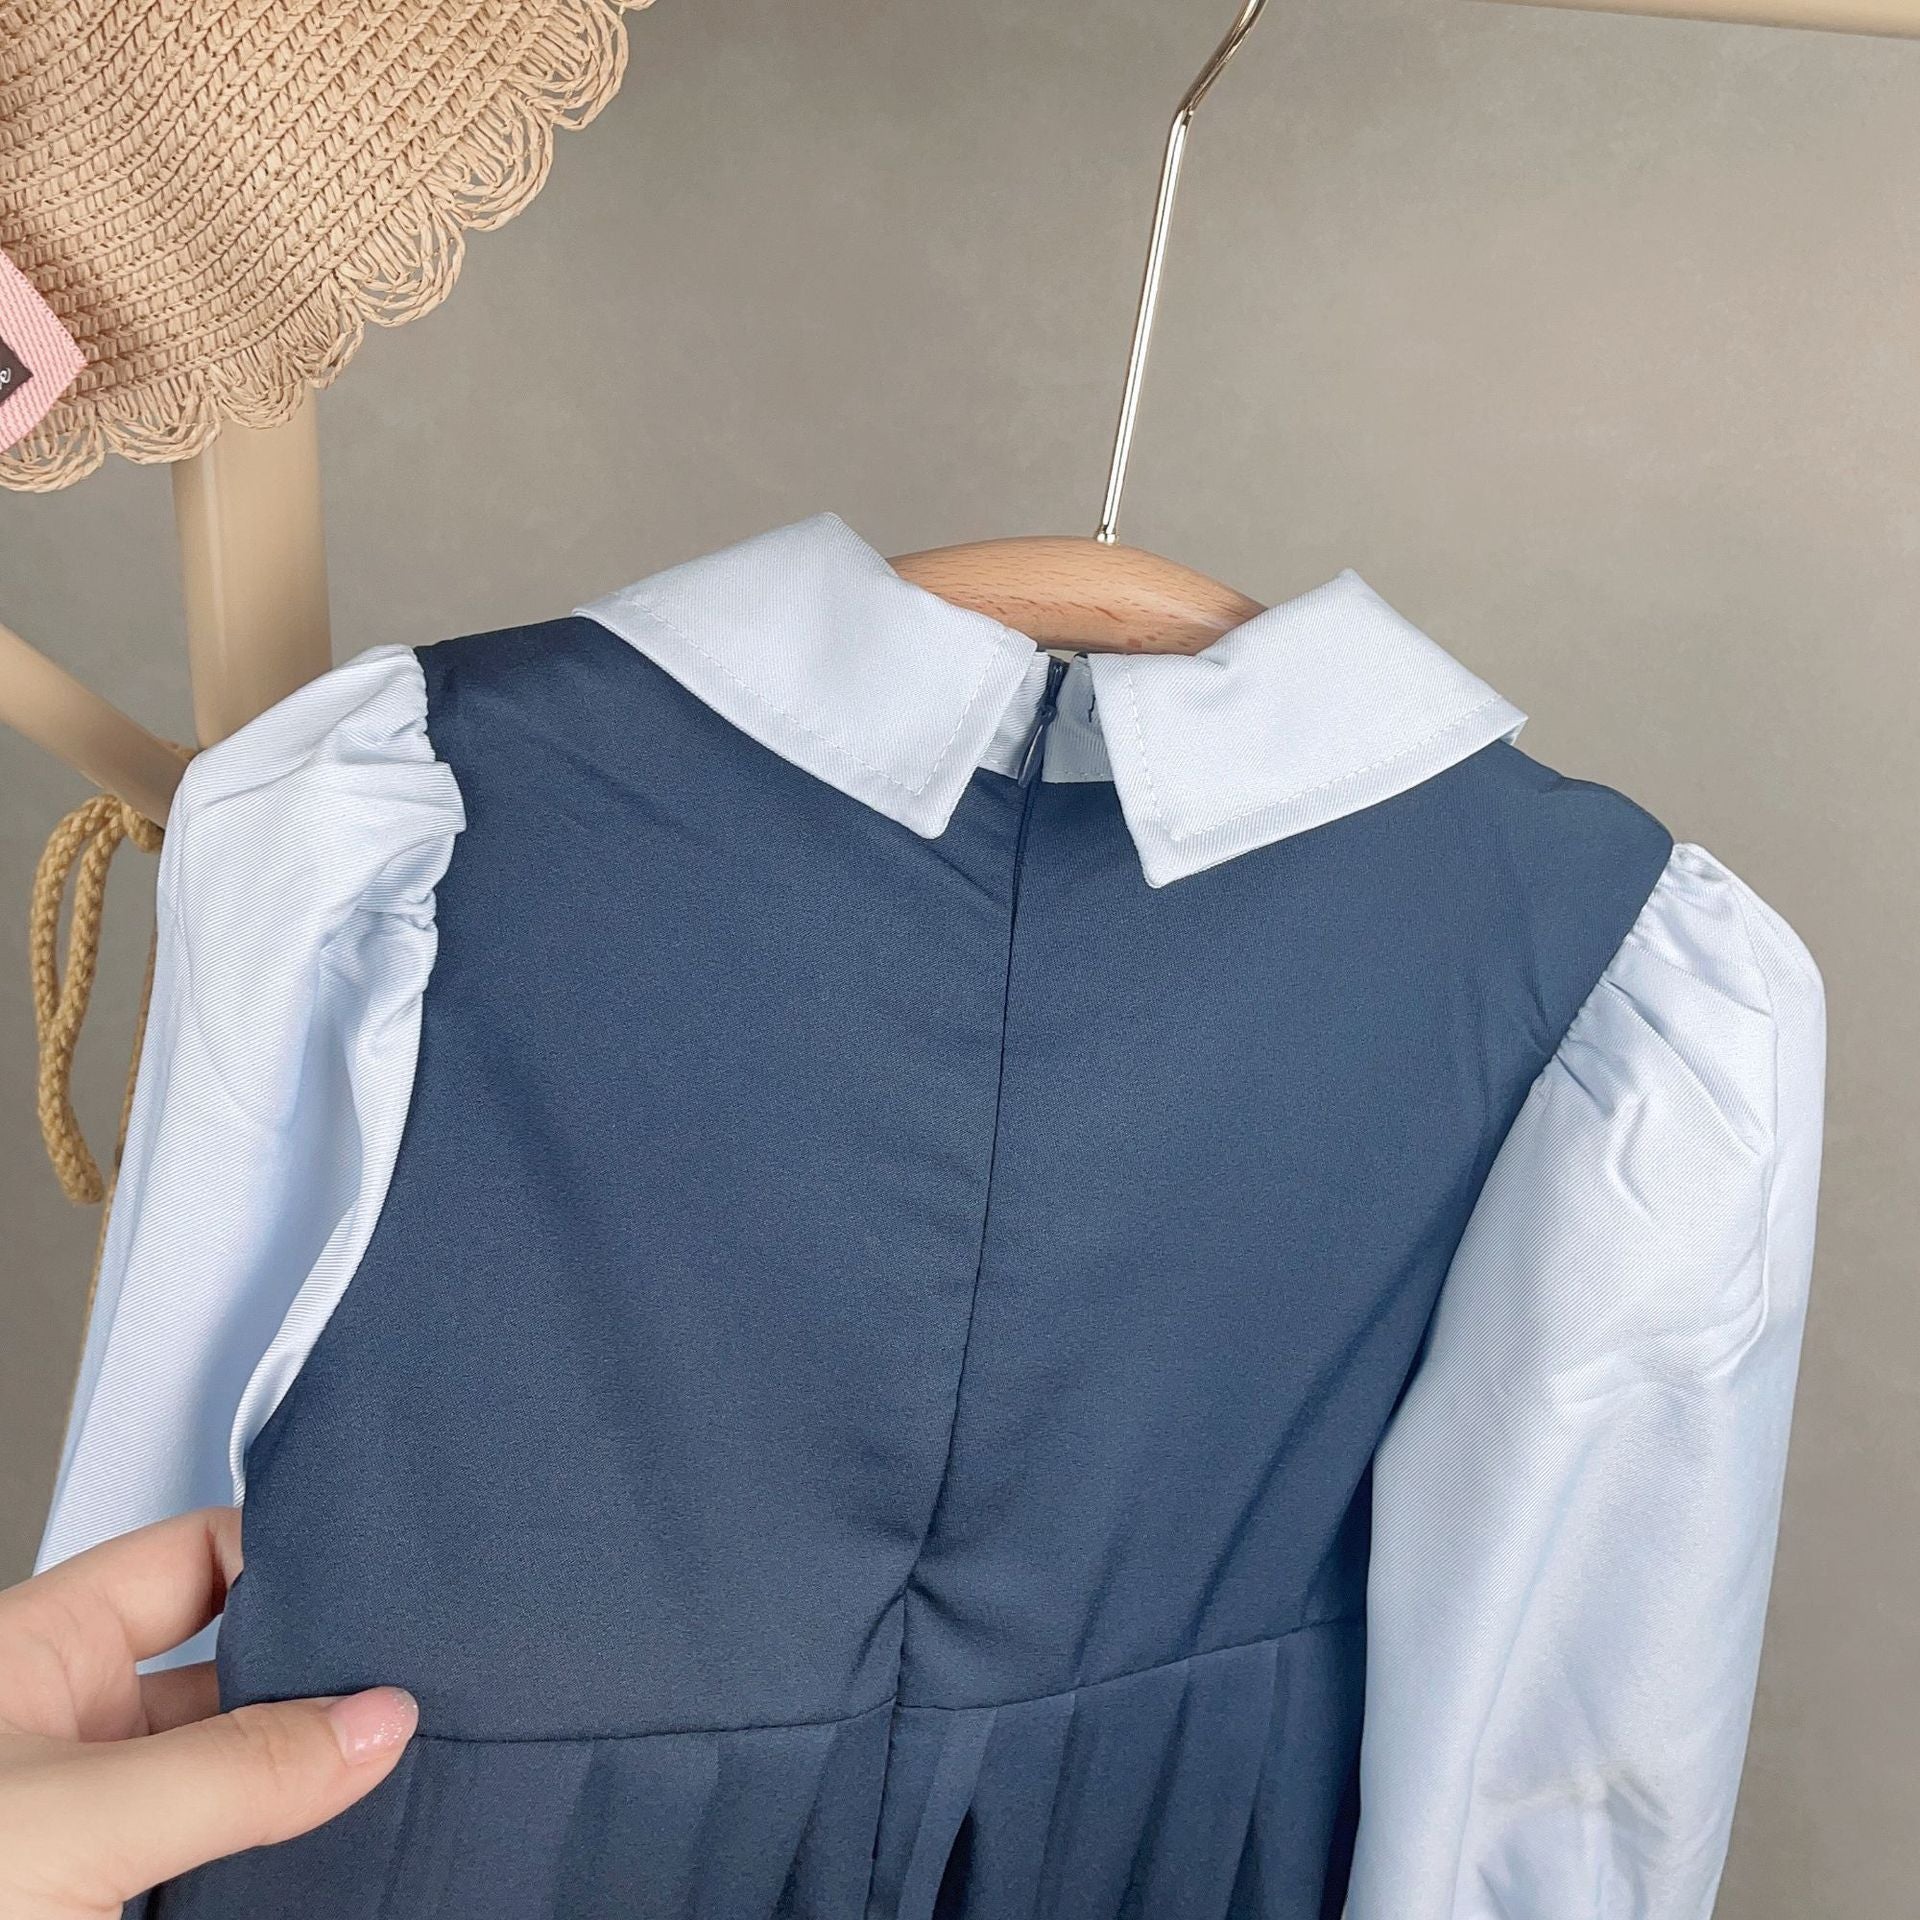 [363543] - Dress Plisket Bordir Lengan Panjang Import Anak Perempuan - Motif Badge Ribbon